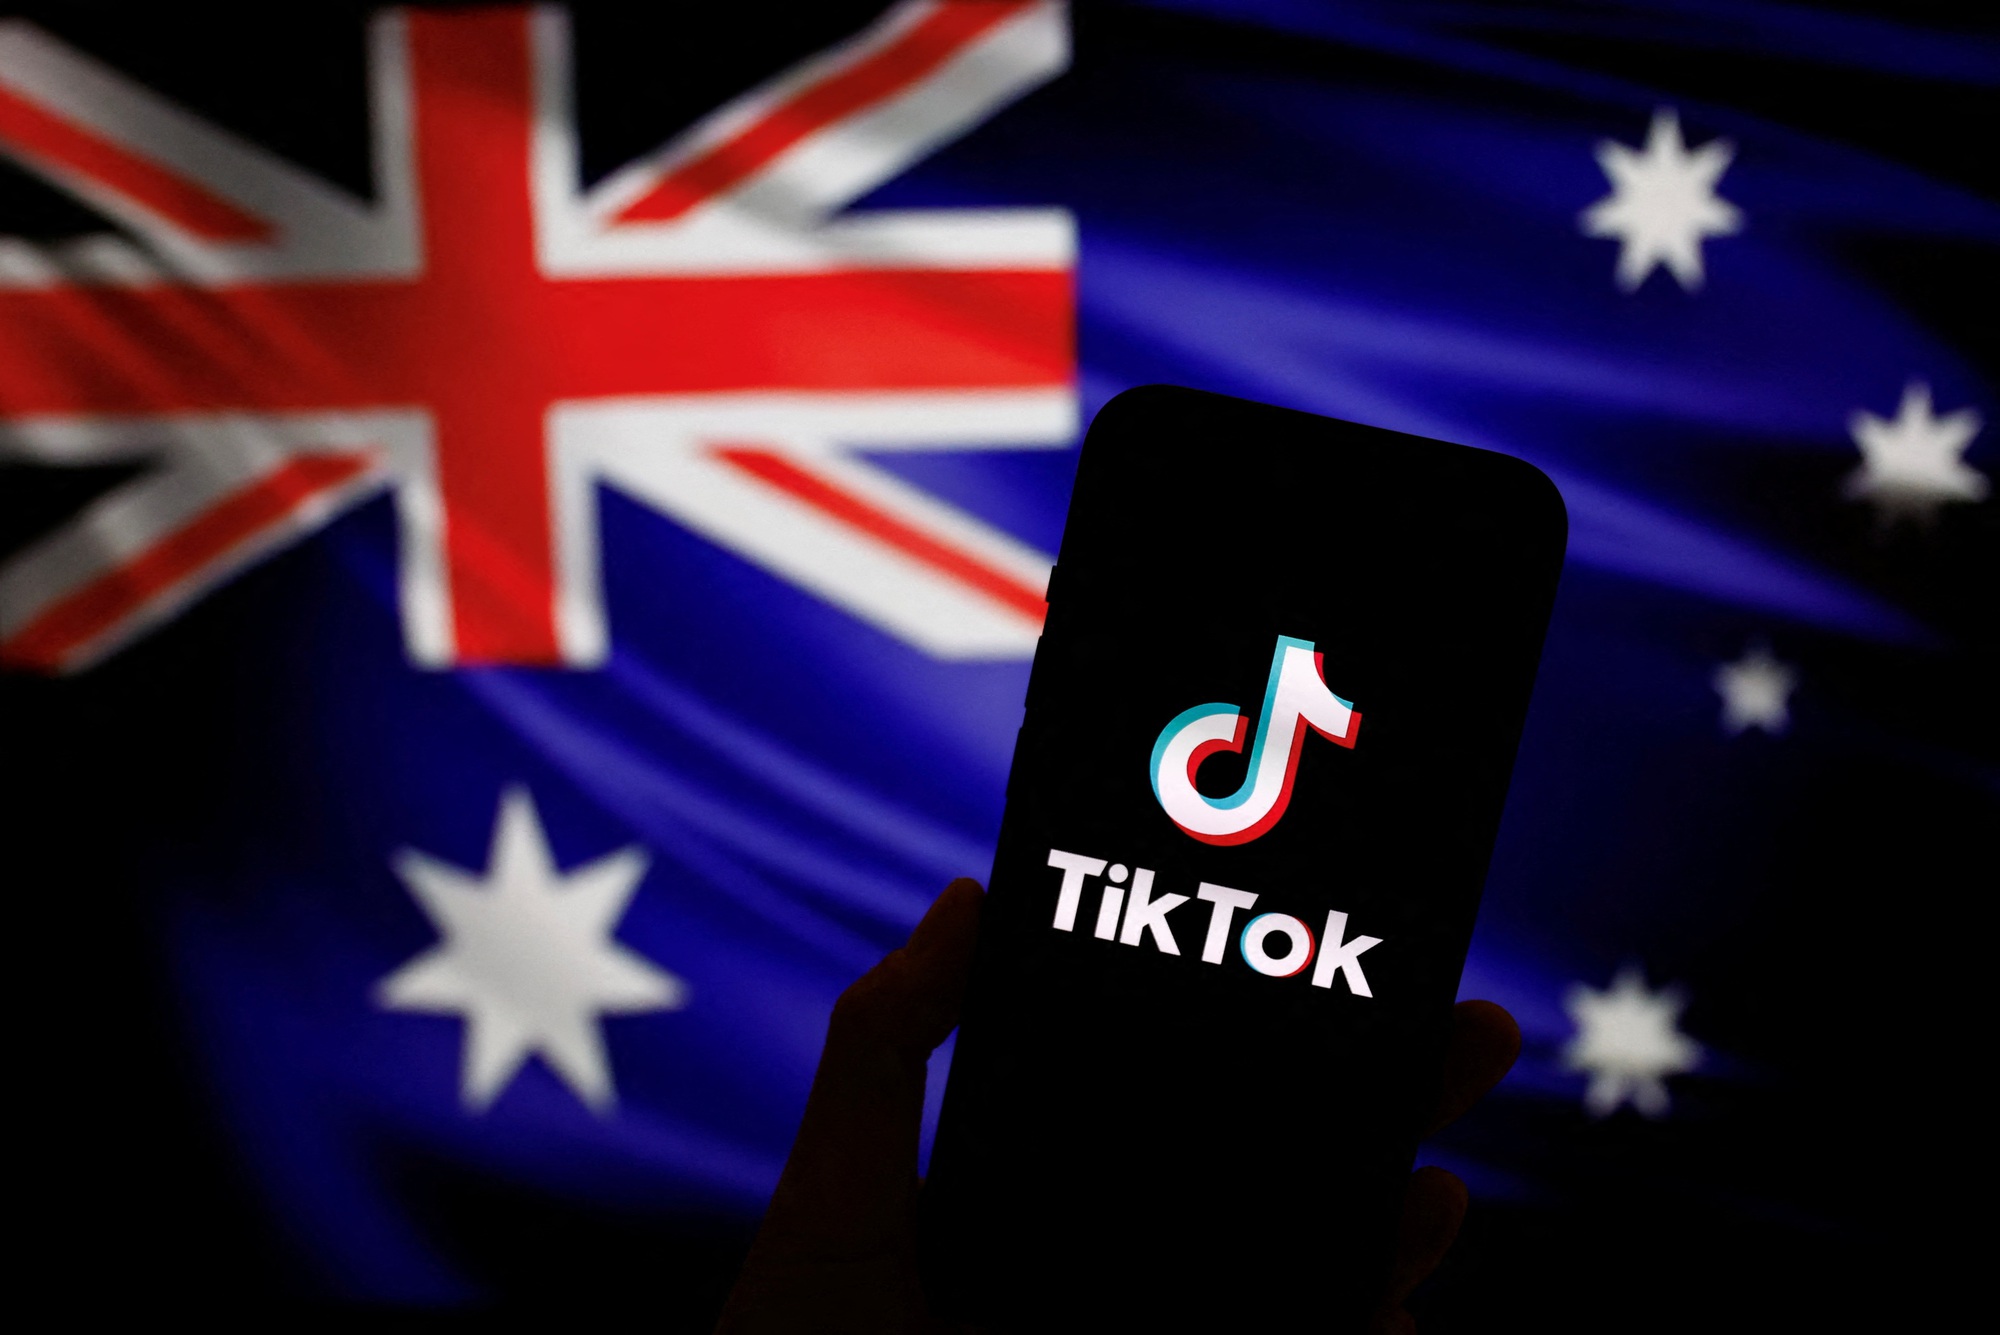 Úc đã cùng với các quốc gia phương Tây khác cấm sử dụng TikTok trên các thiết bị của chính phủ, khi ứng dụng video do Trung Quốc sở hữu đang chịu áp lực ngày càng tăng trước những tuyên bố cho rằng nó gây lo ngại về bảo mật. Ảnh: @AFP.